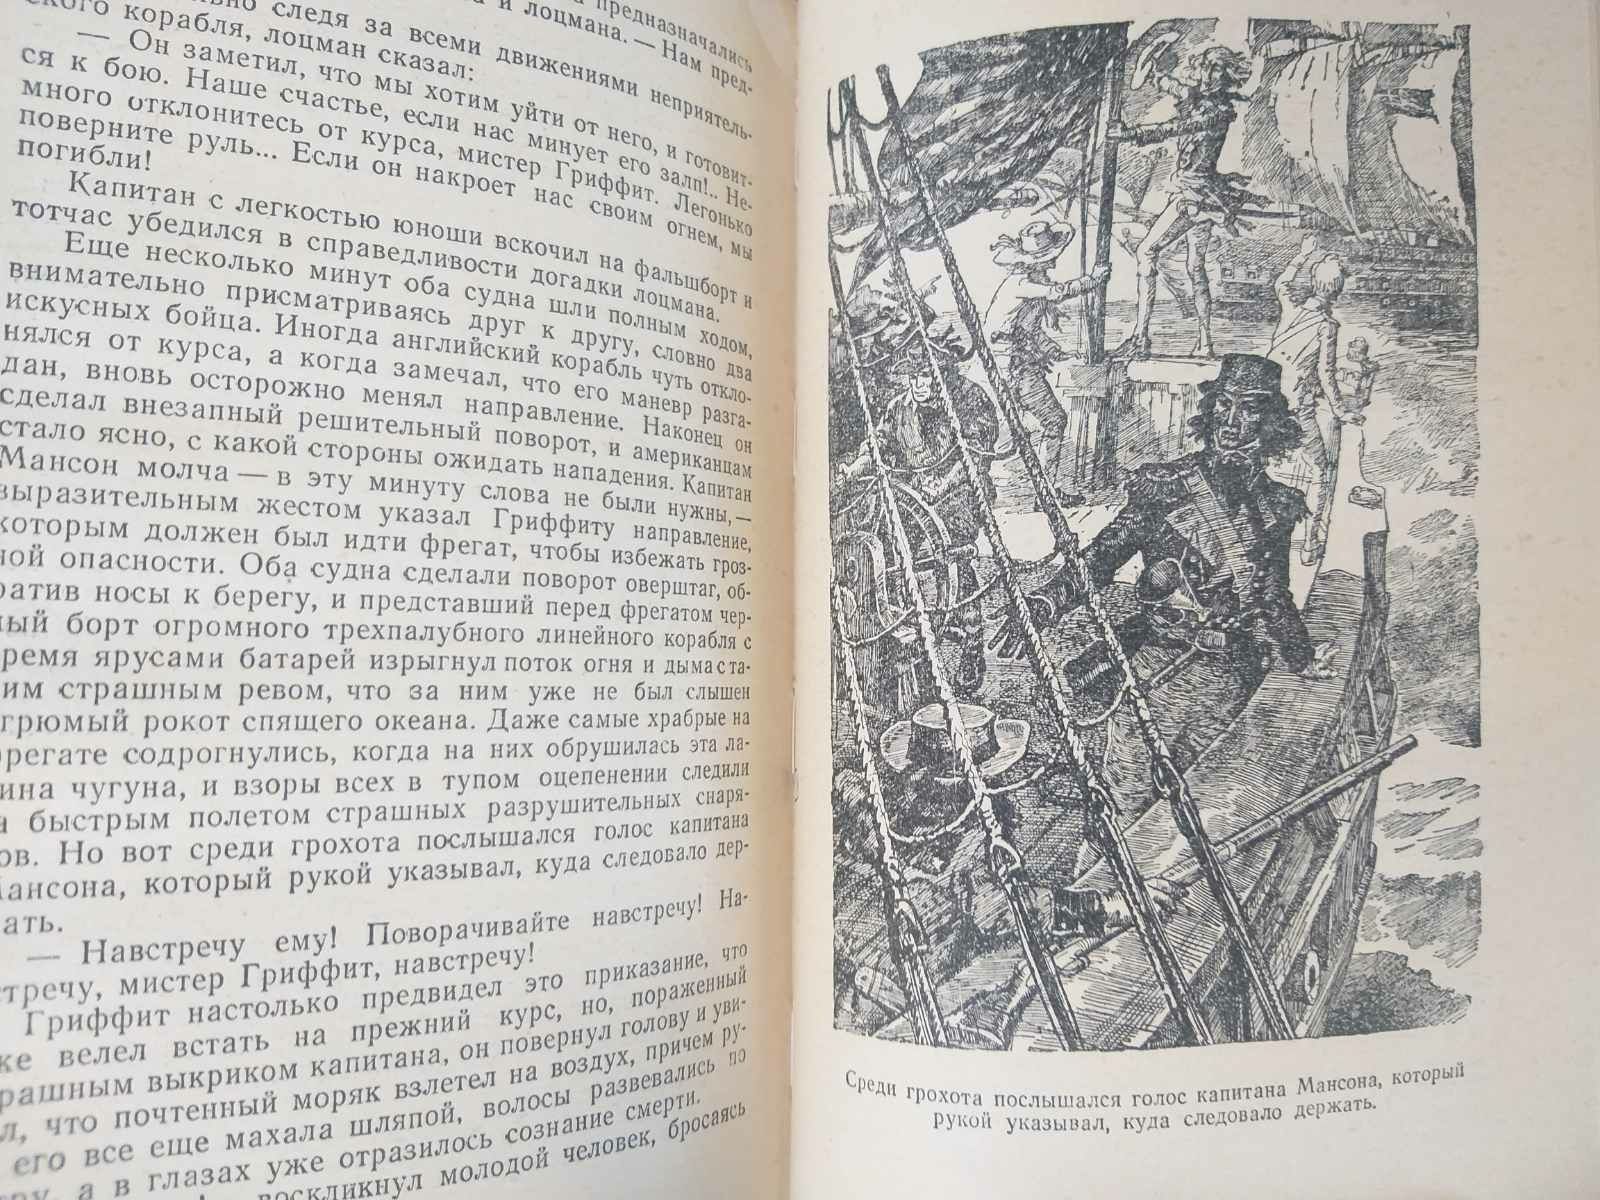 Фенимор Купер Лоцман 1959 БПНФ рамка фантастика шедевры